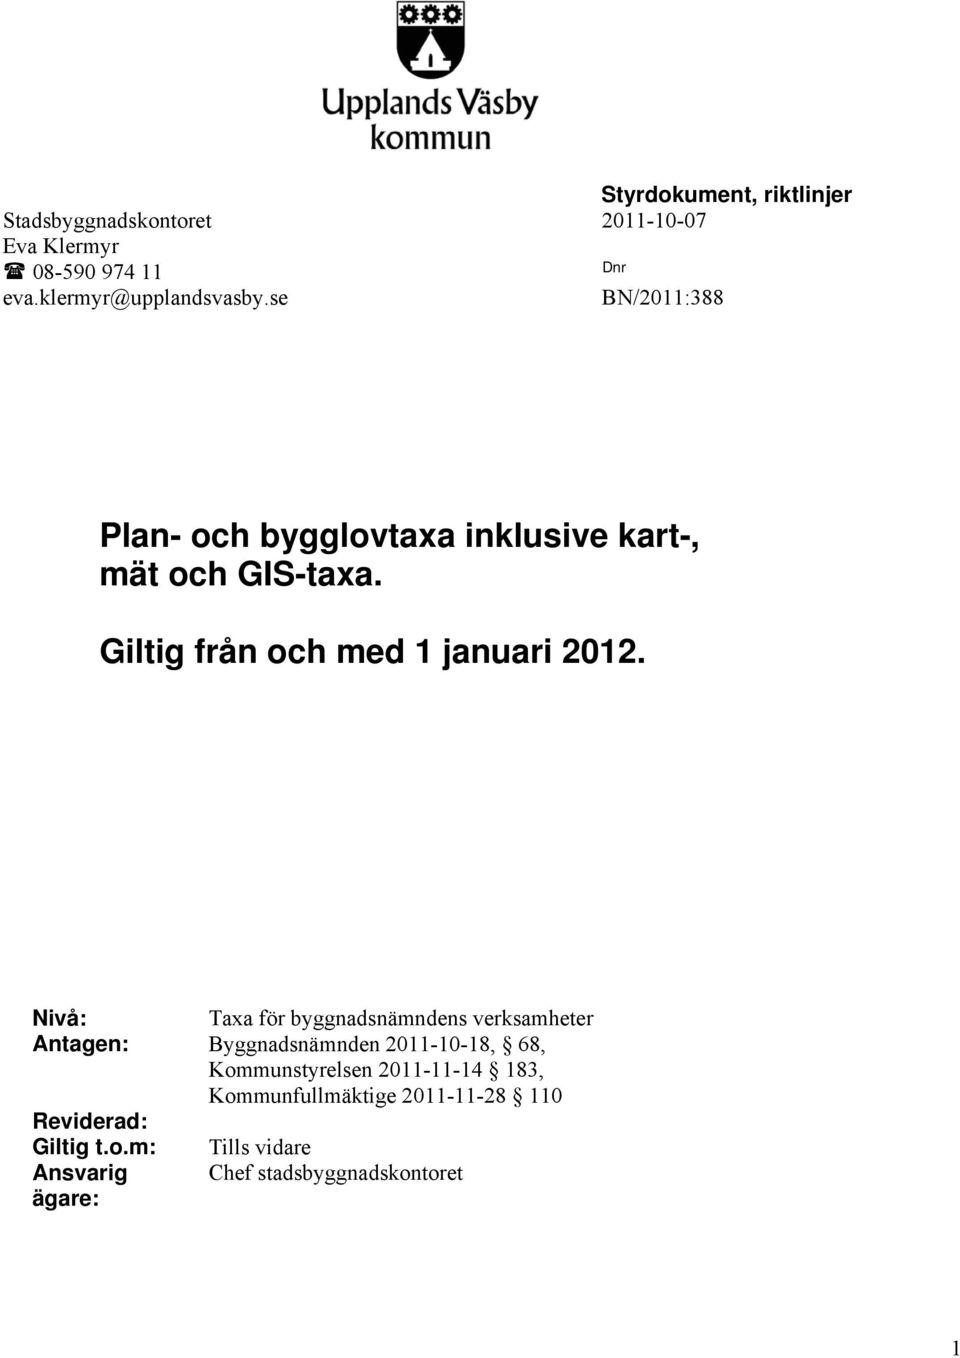 Nivå: Taxa för byggnadsnämndens verksamheter Antagen: Byggnadsnämnden 2011-10-18, 68, Kommunstyrelsen 2011-11-14